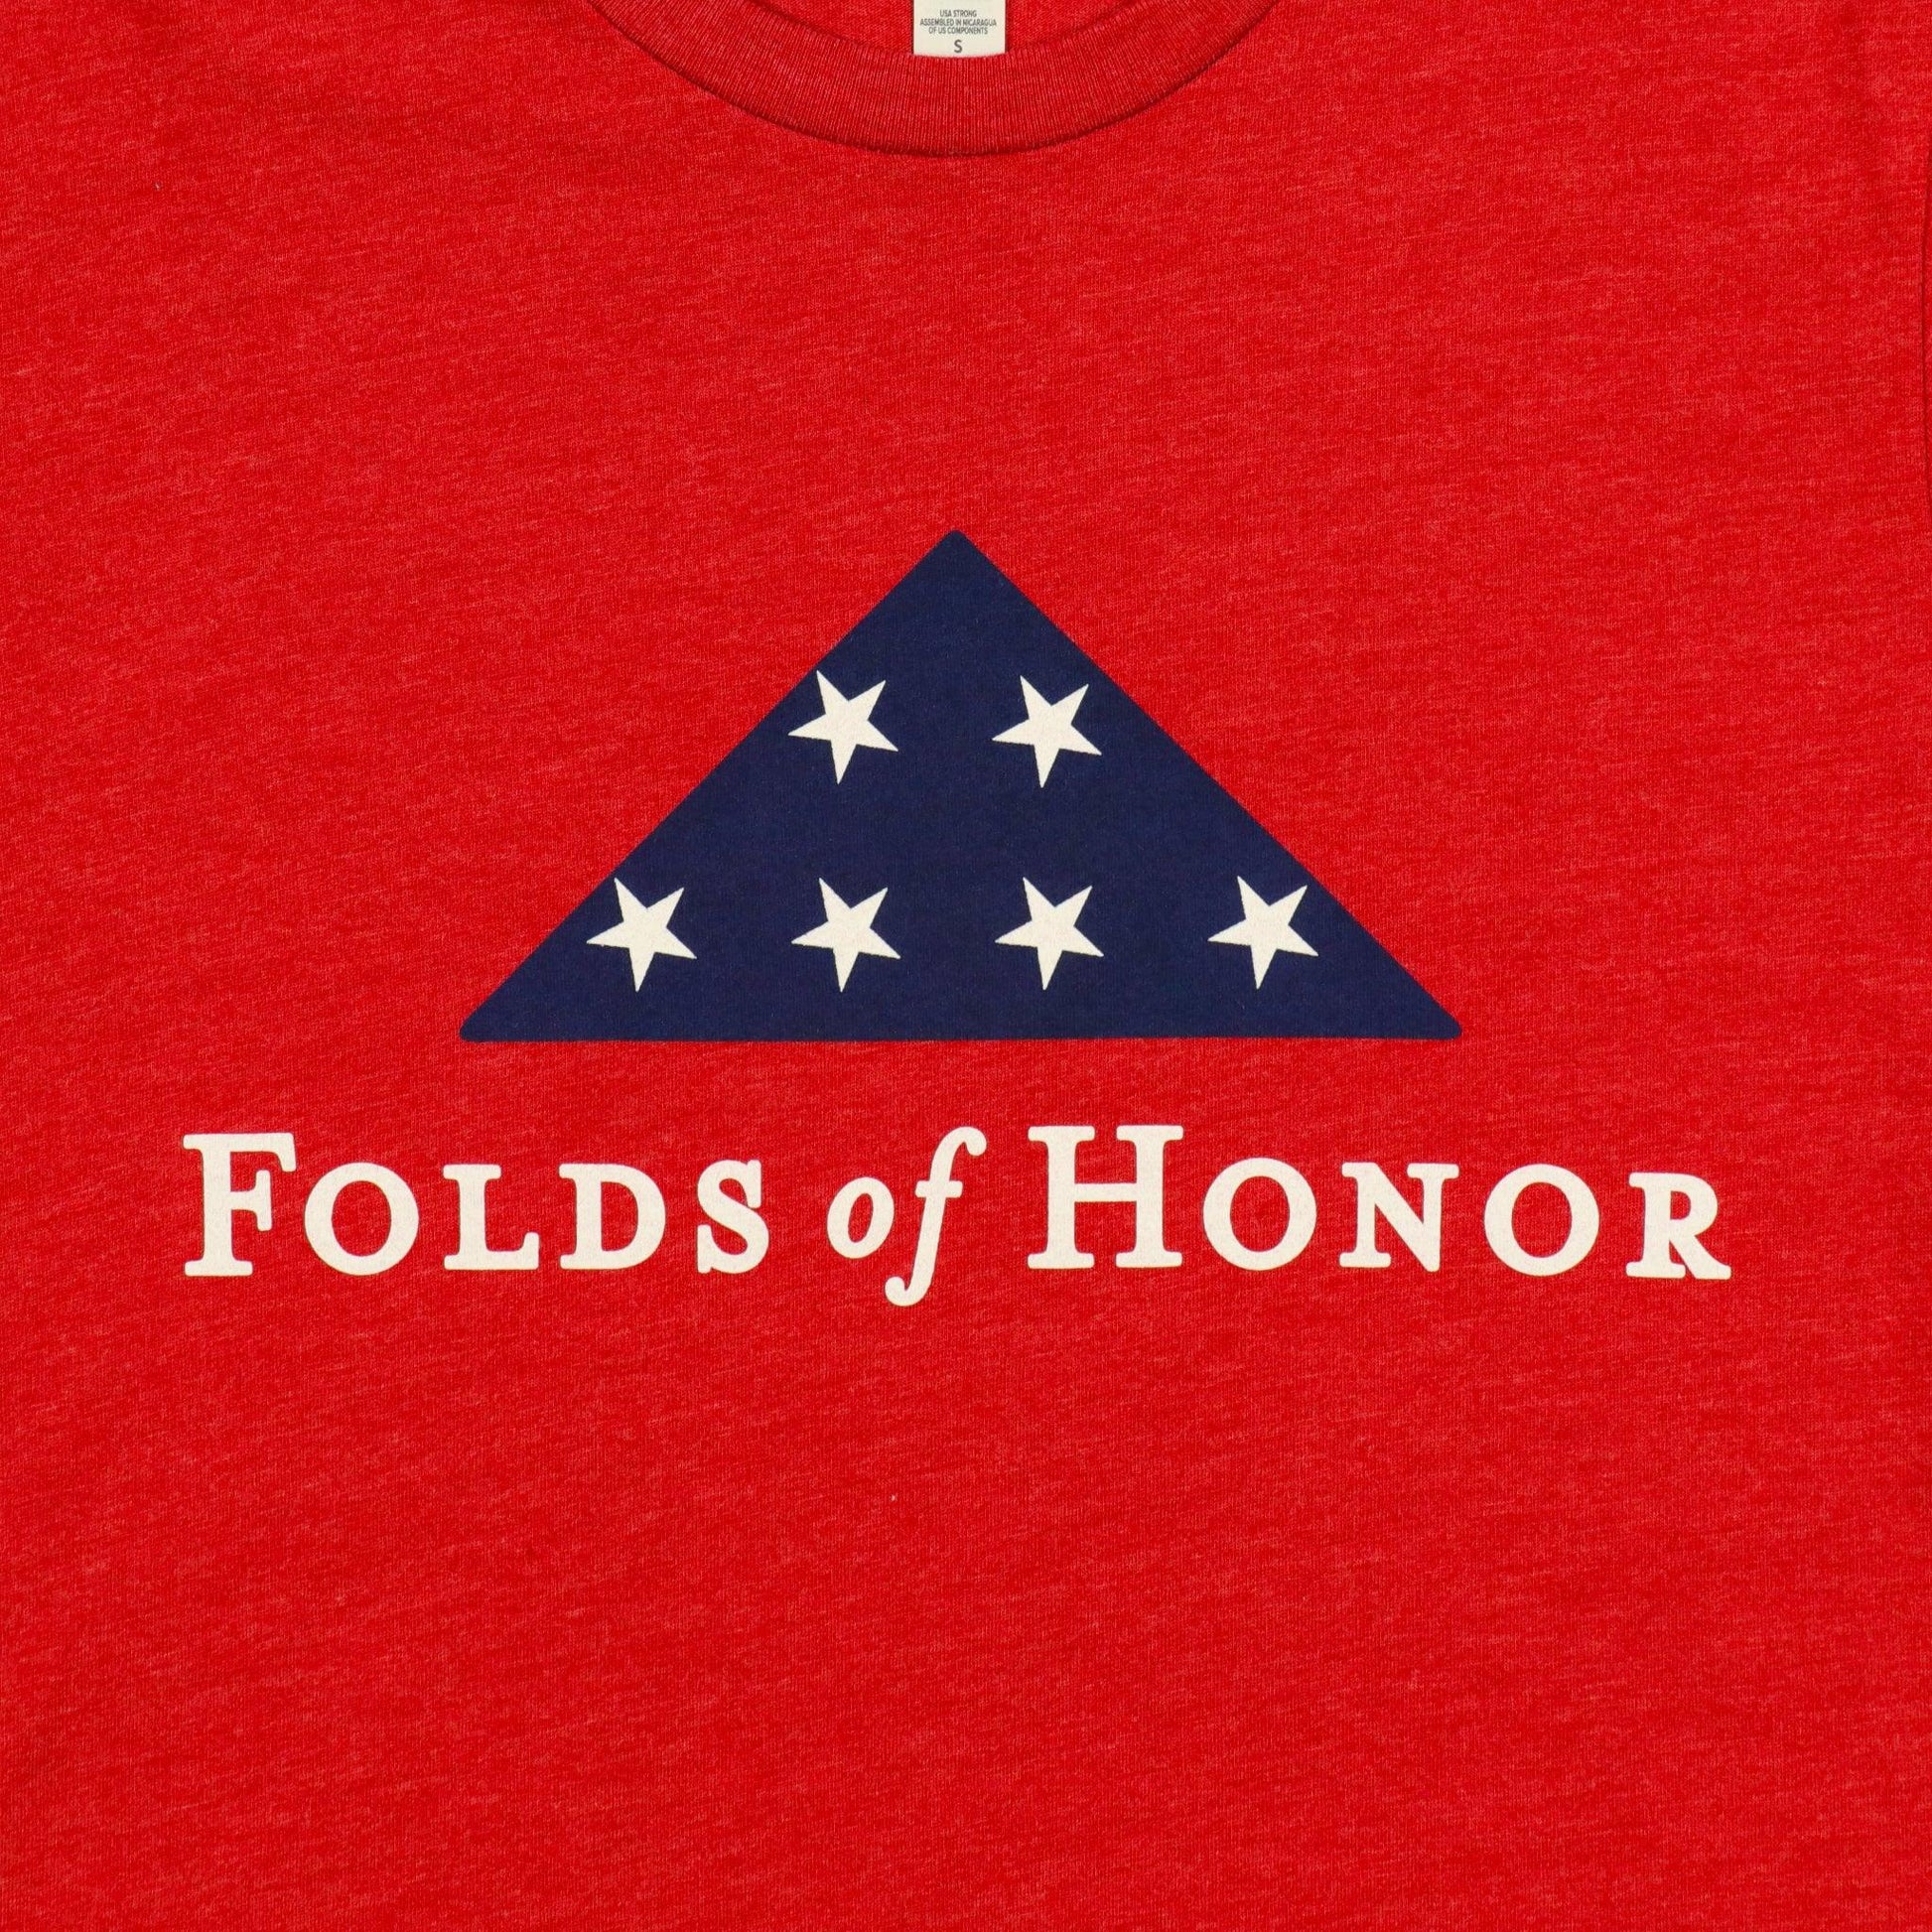 detail of folds of honor logo